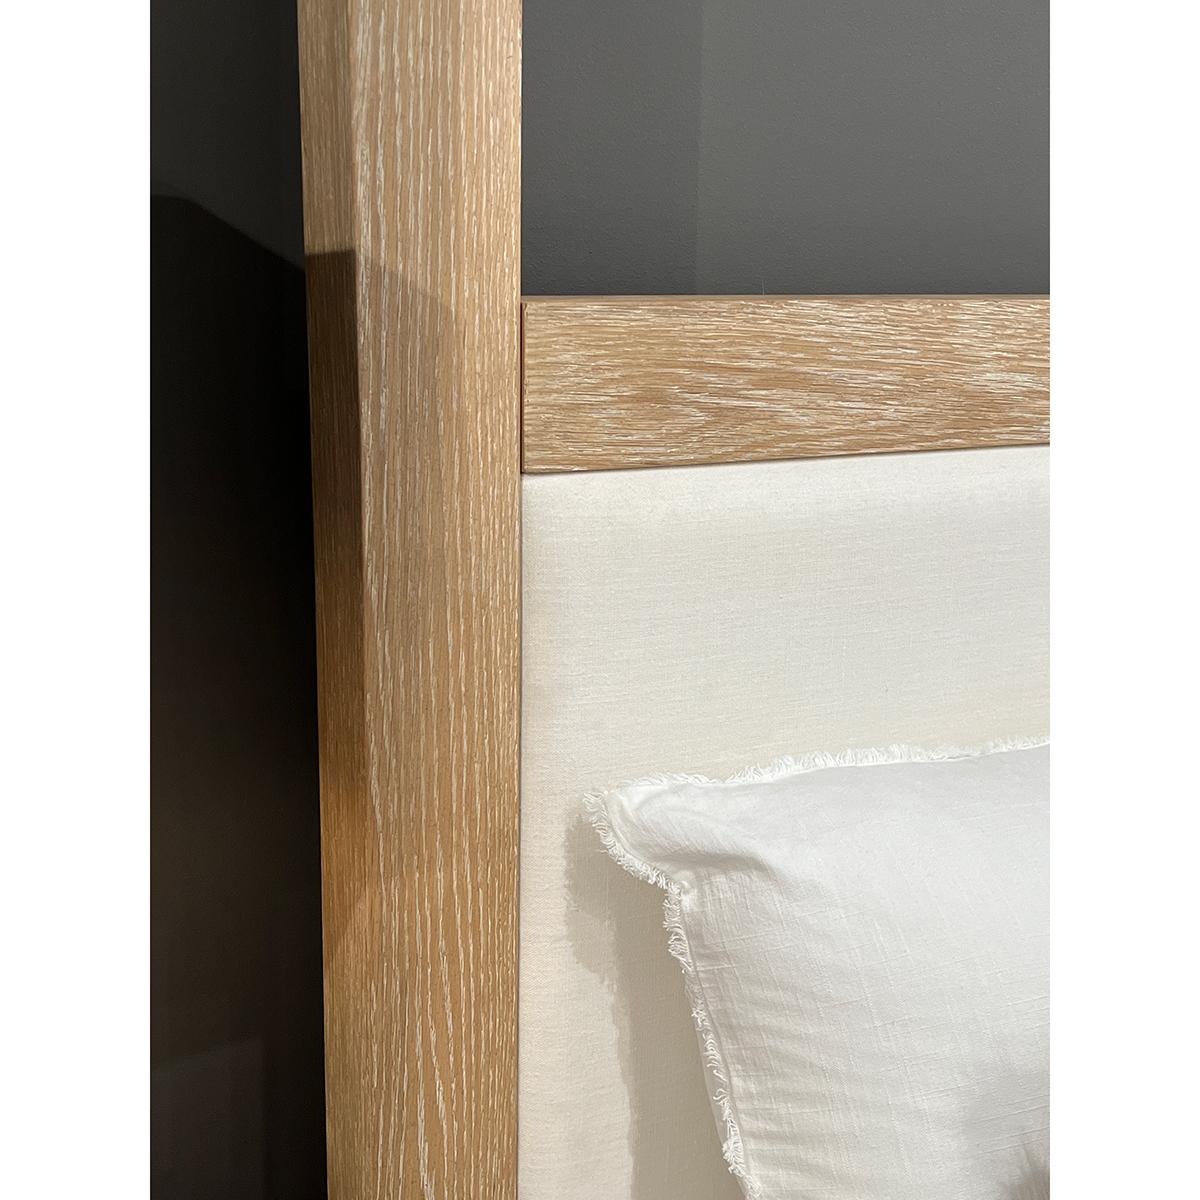 

Un lit à baldaquin moderne en chêne clair avec une magnifique finition en chêne naturel blanchi. 

Avec des accents en laiton poli et un cadre audacieux, la forme cubiste simple capture l'essence du minimalisme.

Dimensions US King : 84